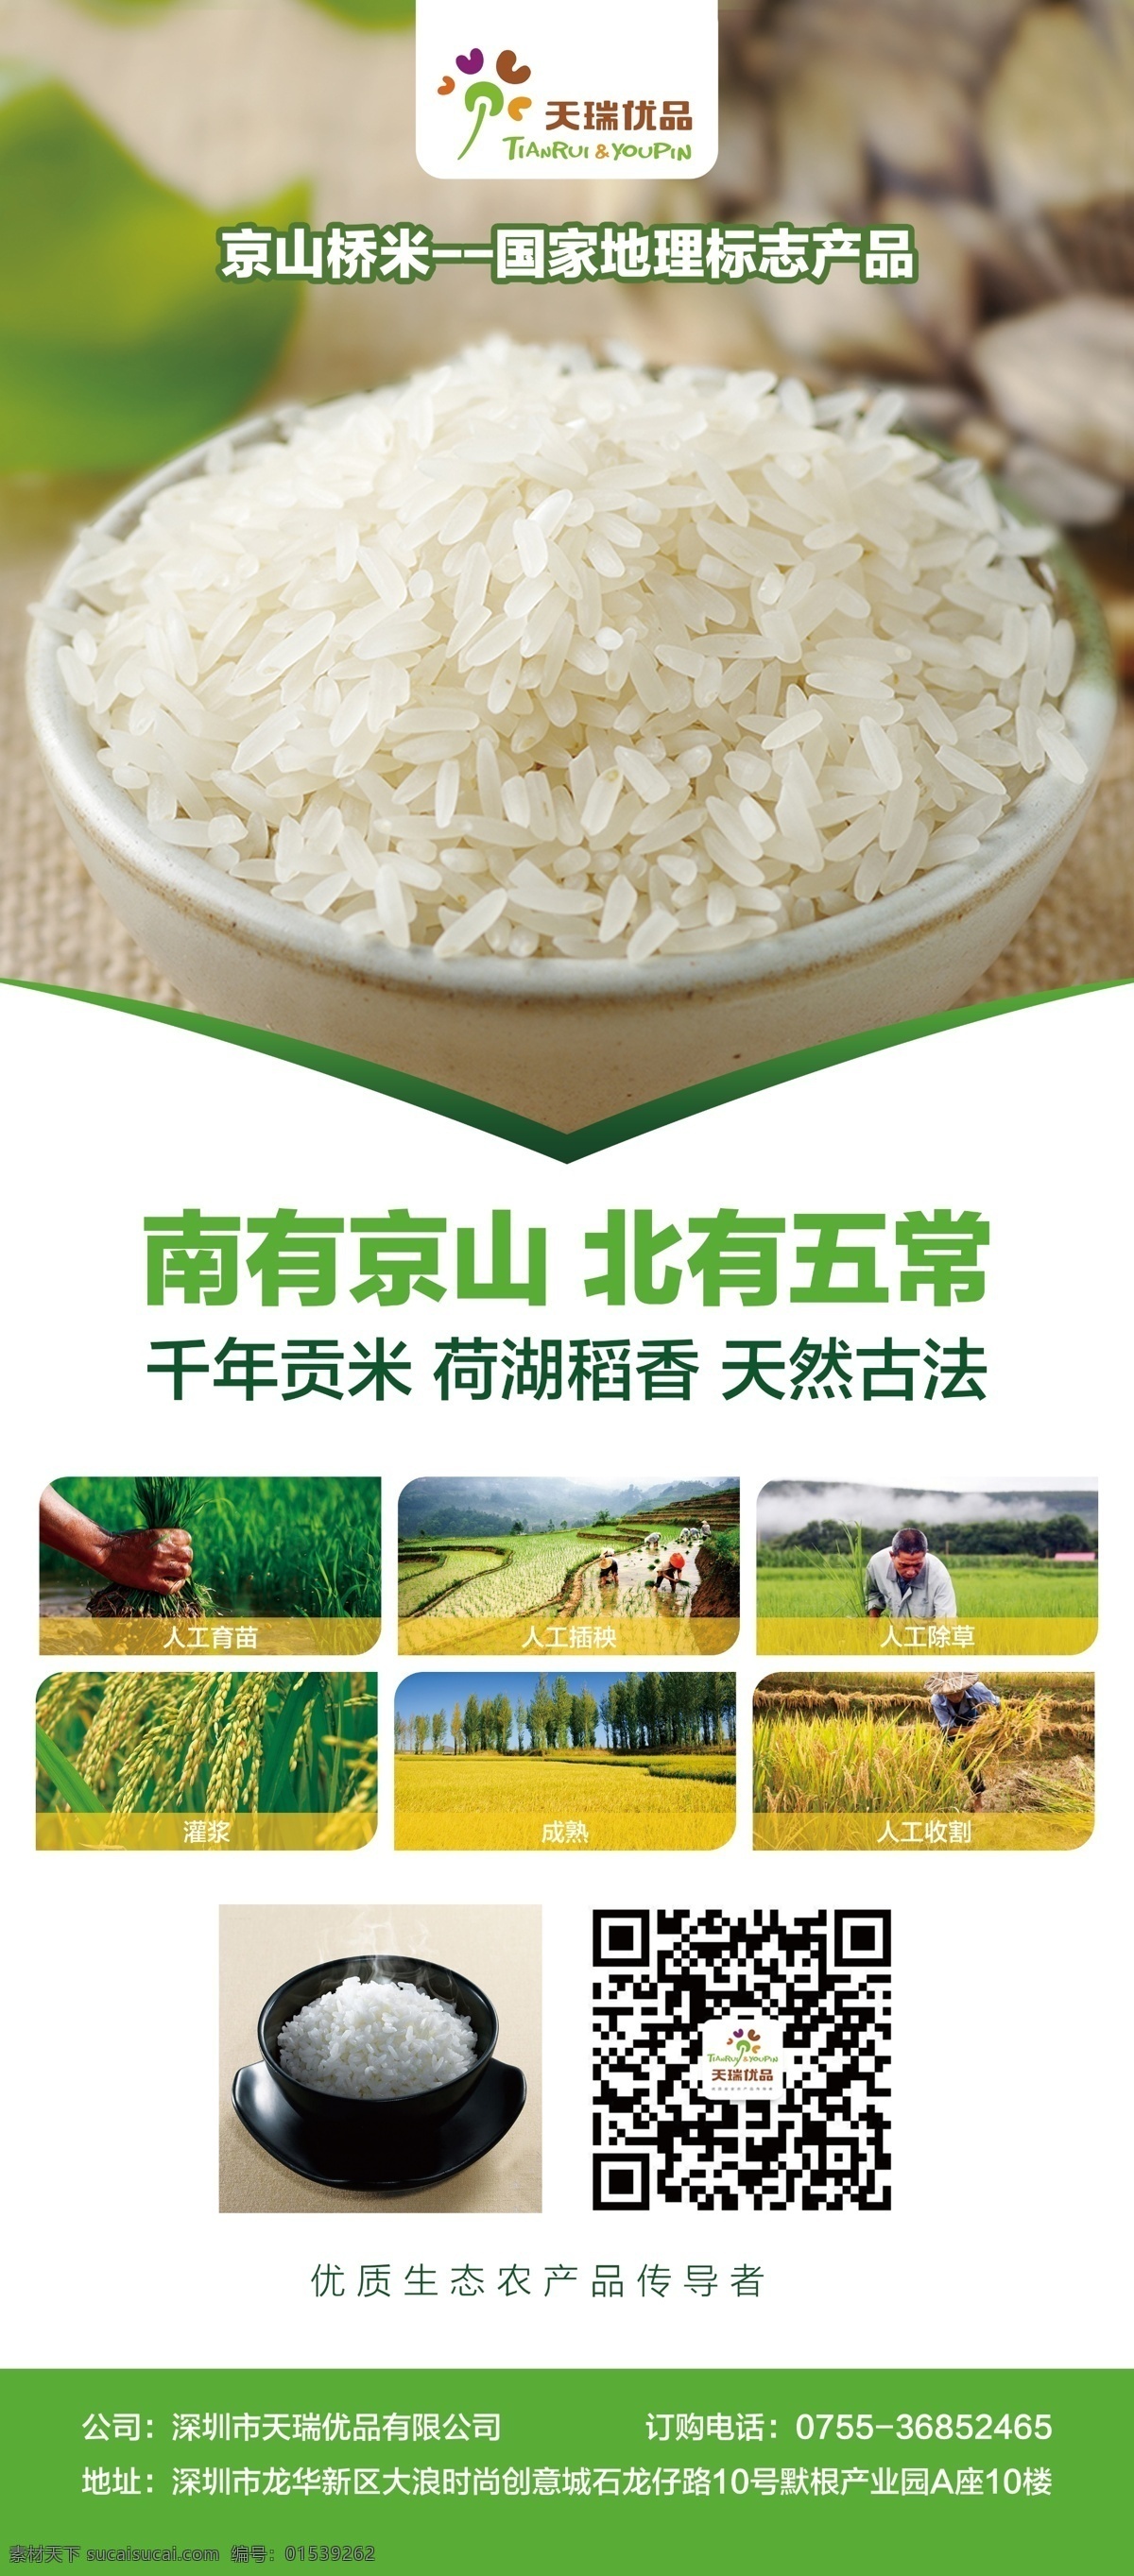 湖北省 京山 桥 米 有机 大米 嘉靖 贡米 粮食 农产品 五谷杂粮 老物种 桥米 绿色 灰色